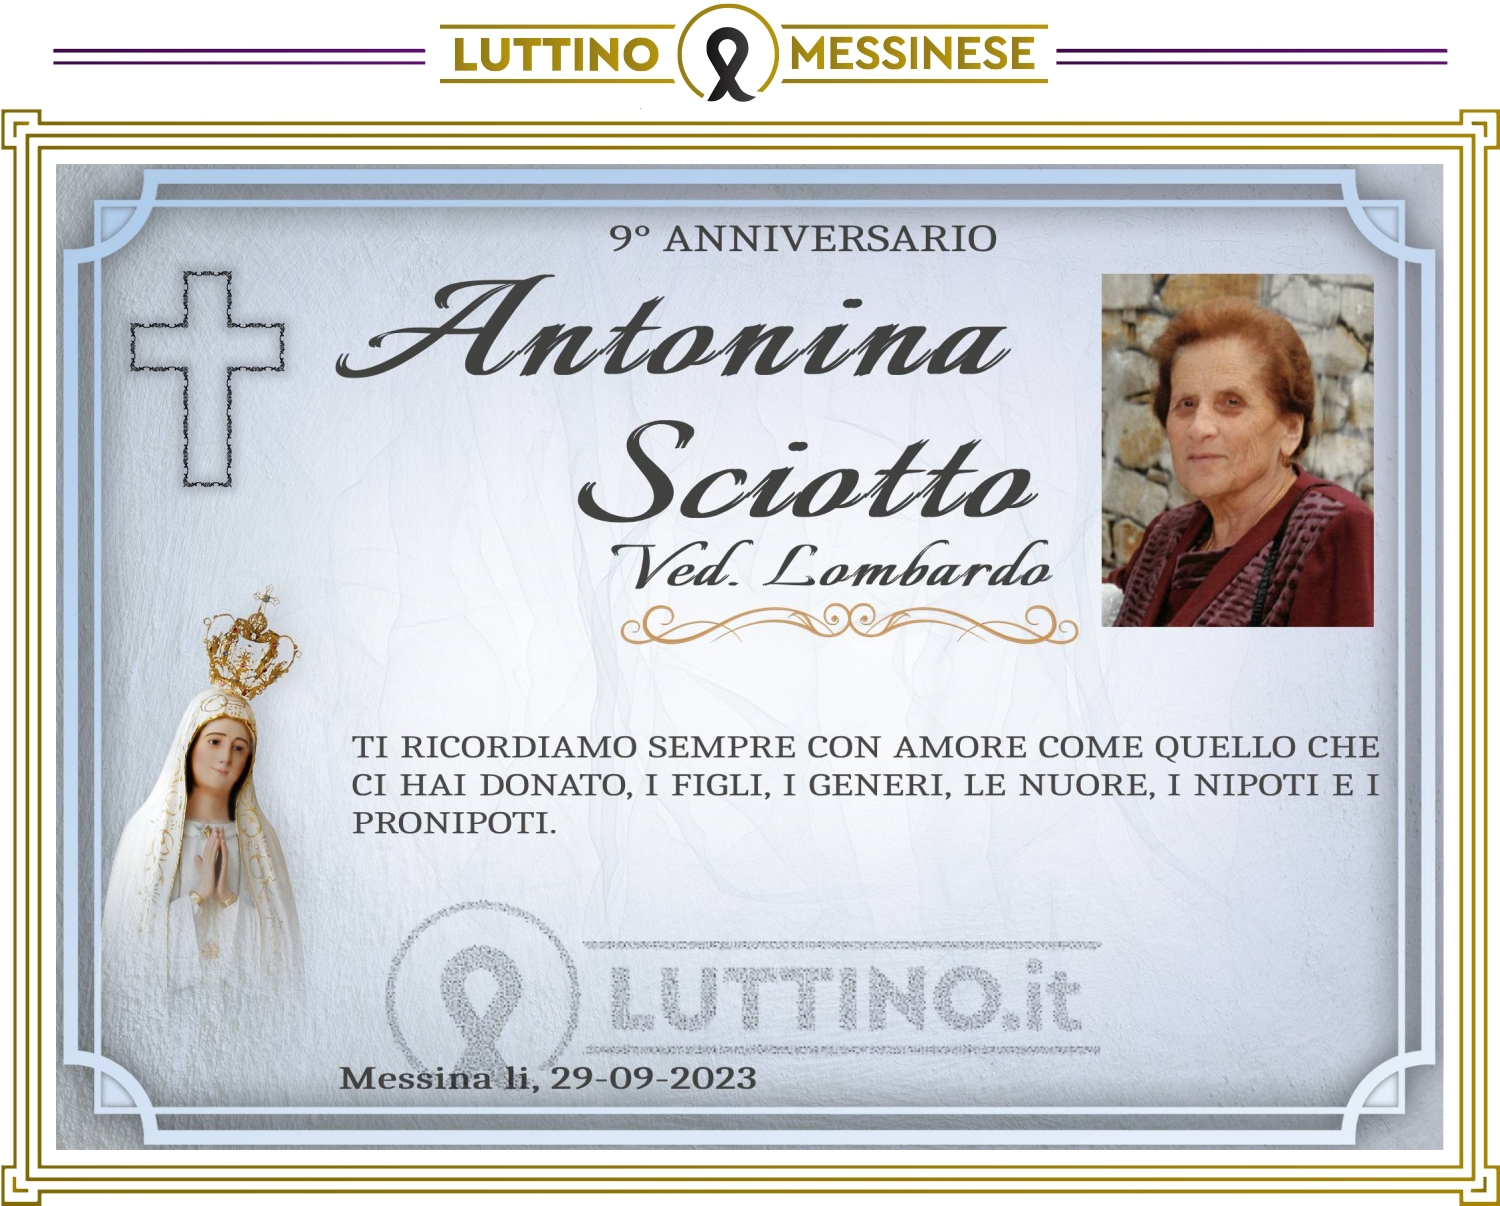 Antonina Sciotto